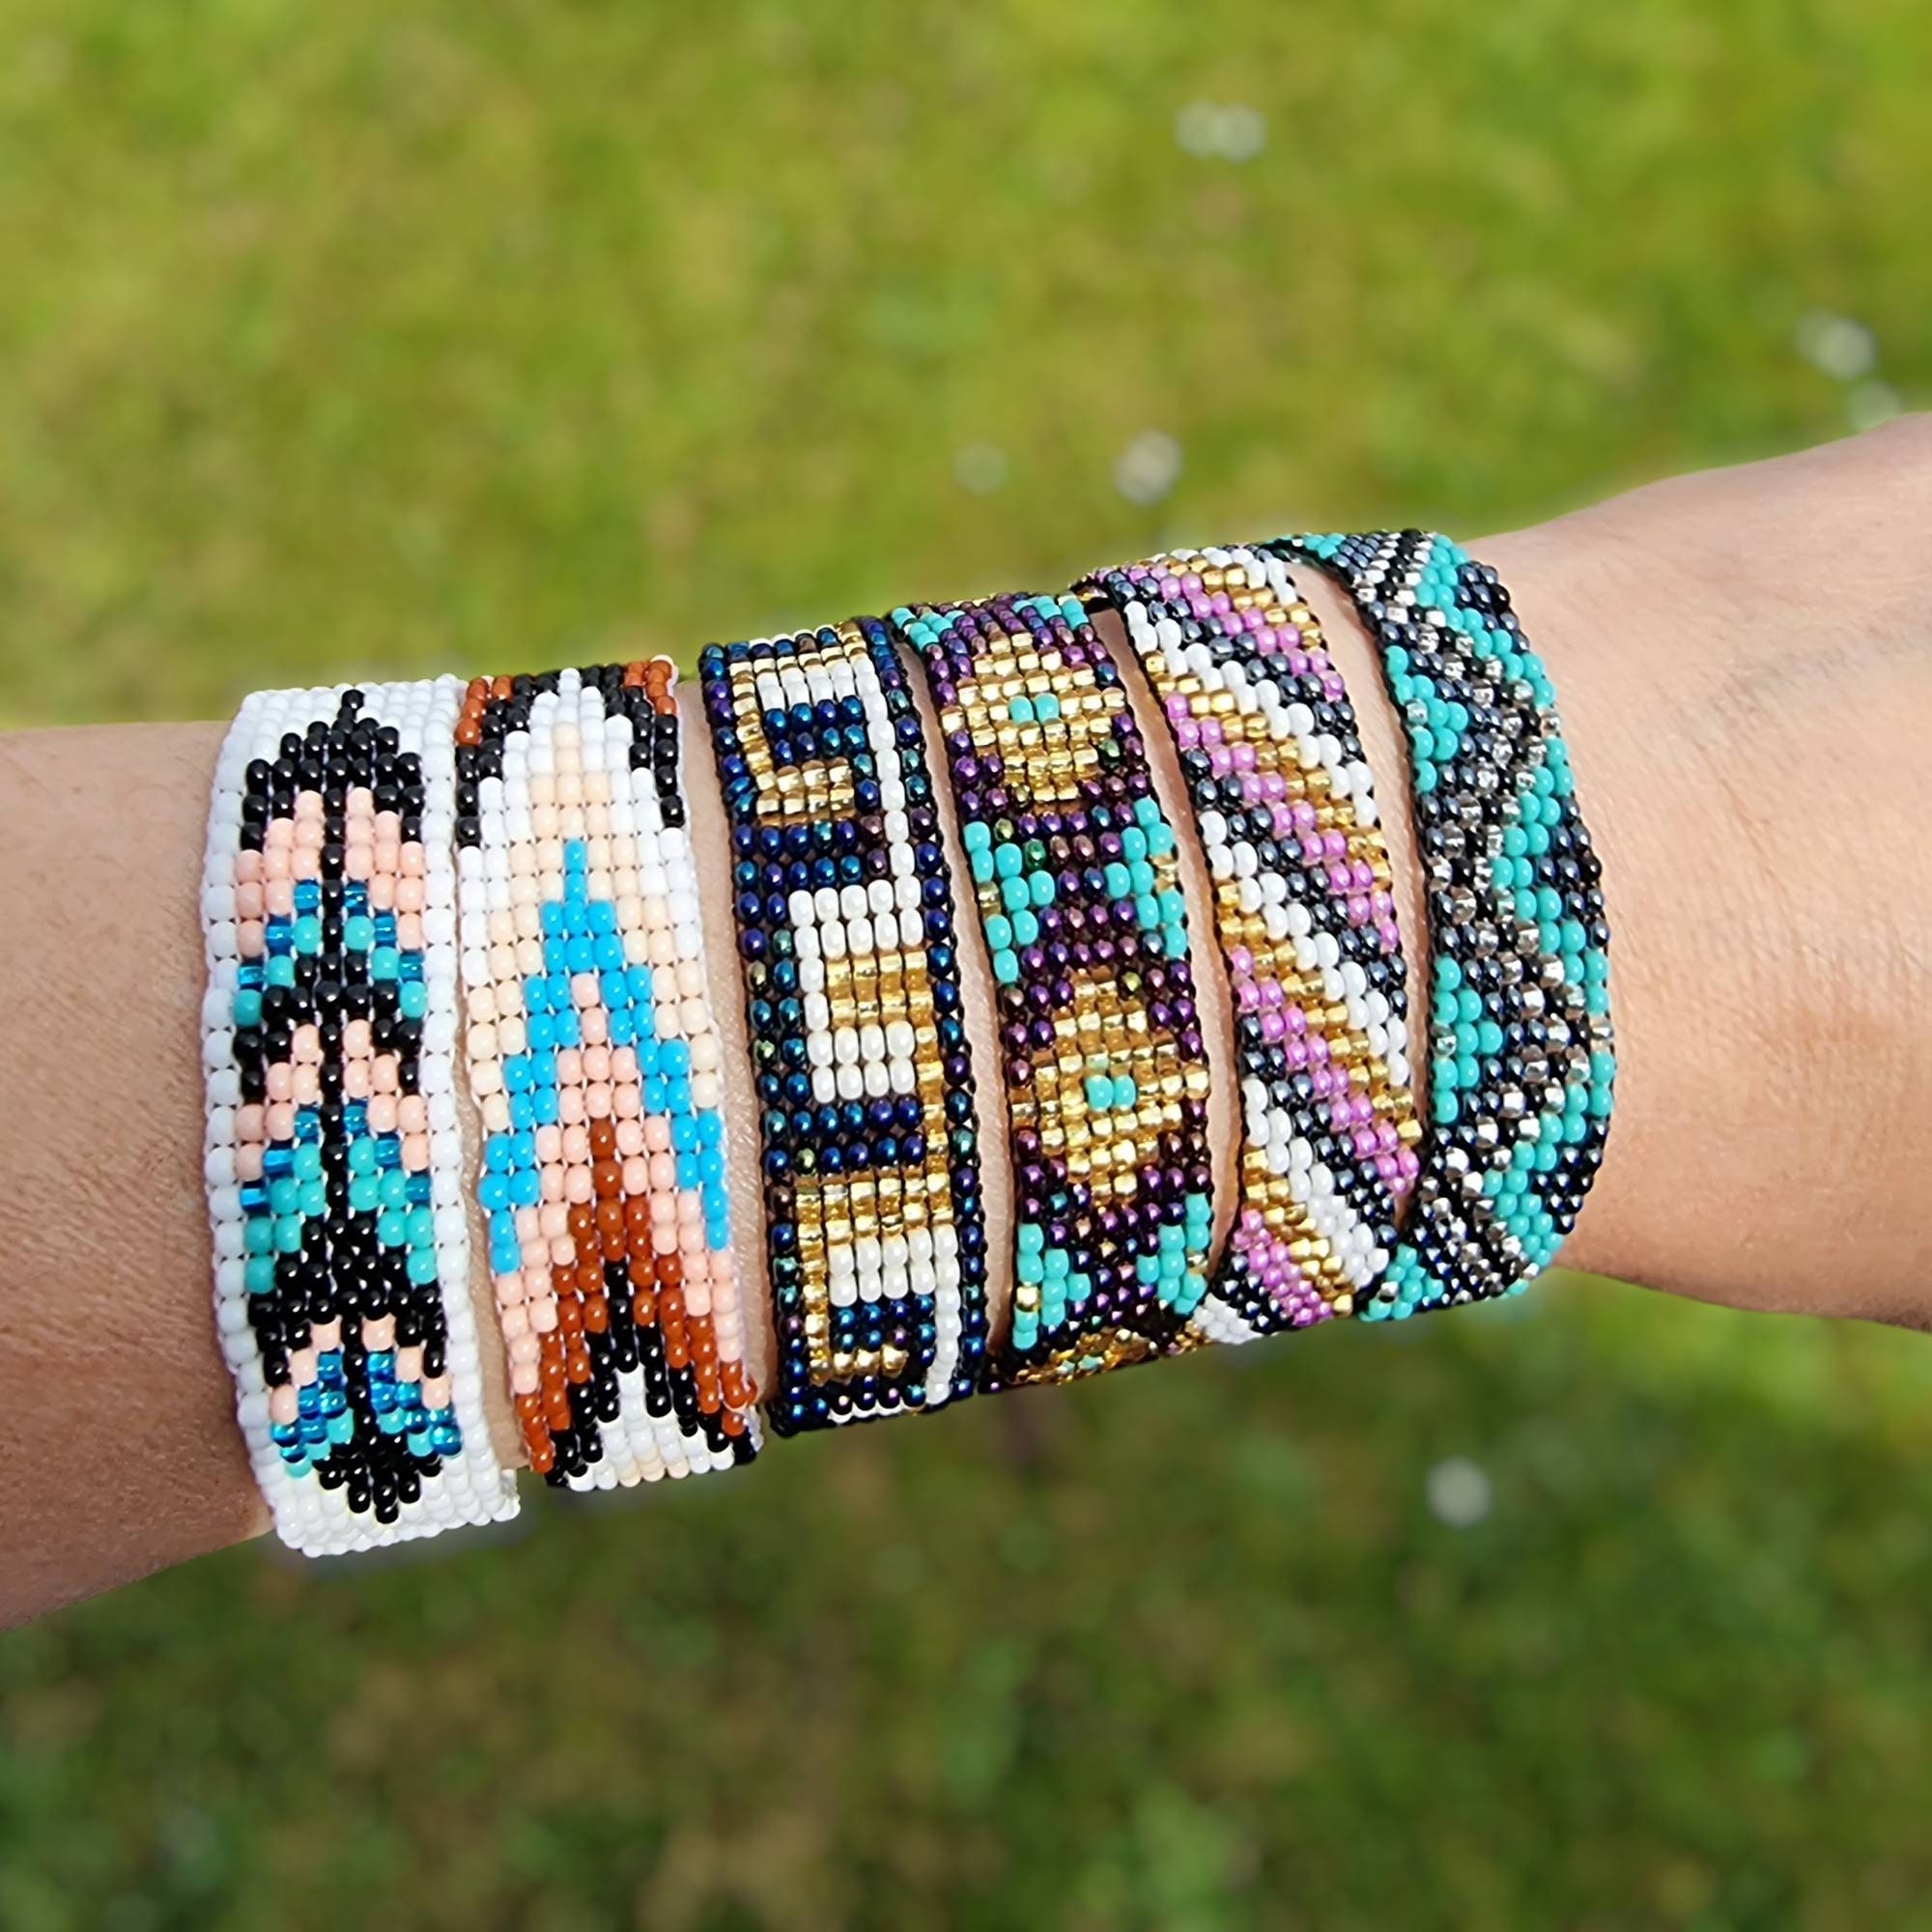 Bead loom bracelet, beaded bracelet, wrap bracelet, seed beads, women  Bracelets